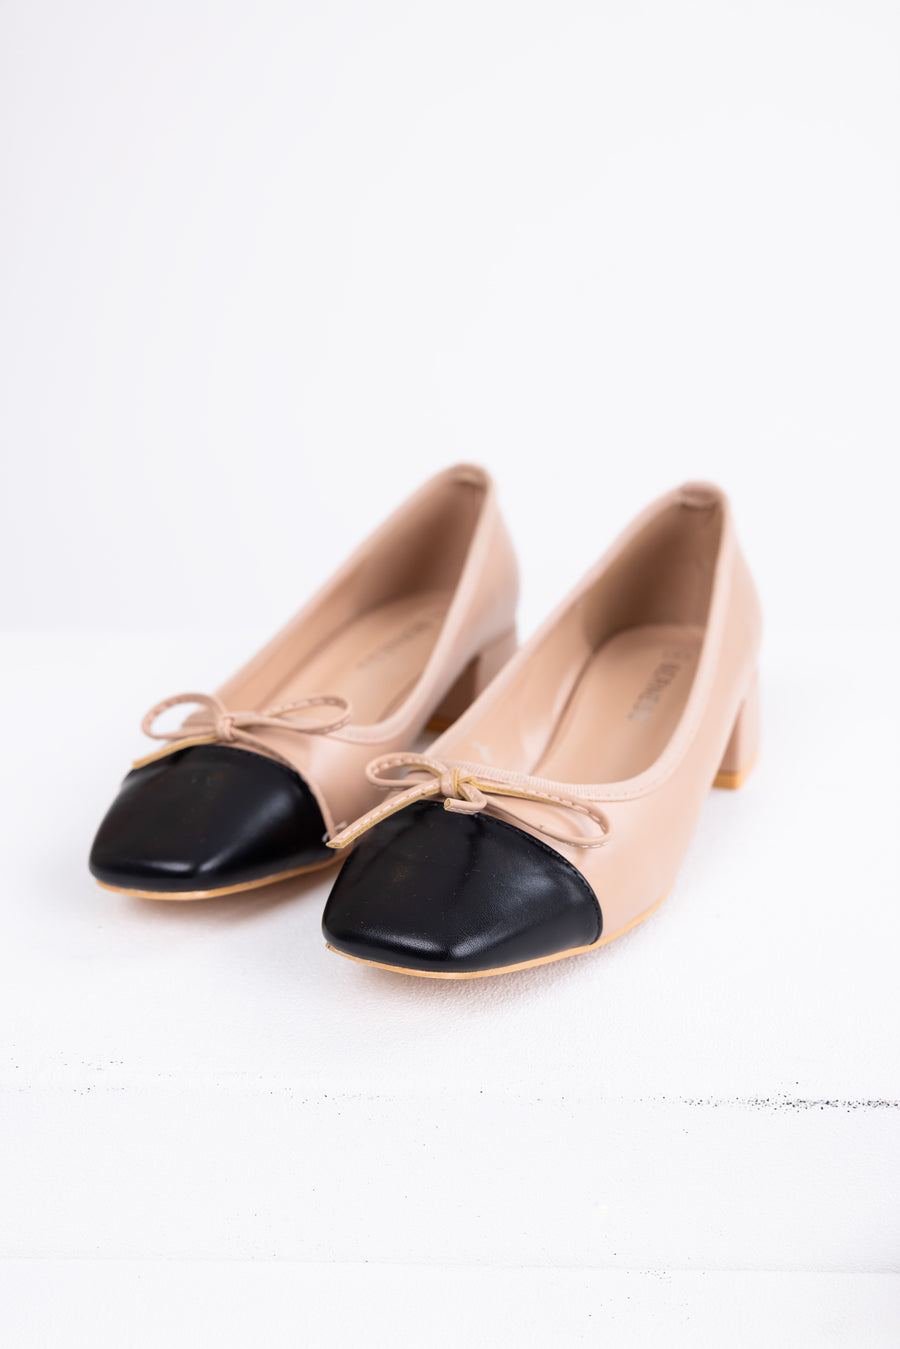 Nude Contrast Toe Low Heel Ballerina Shoes